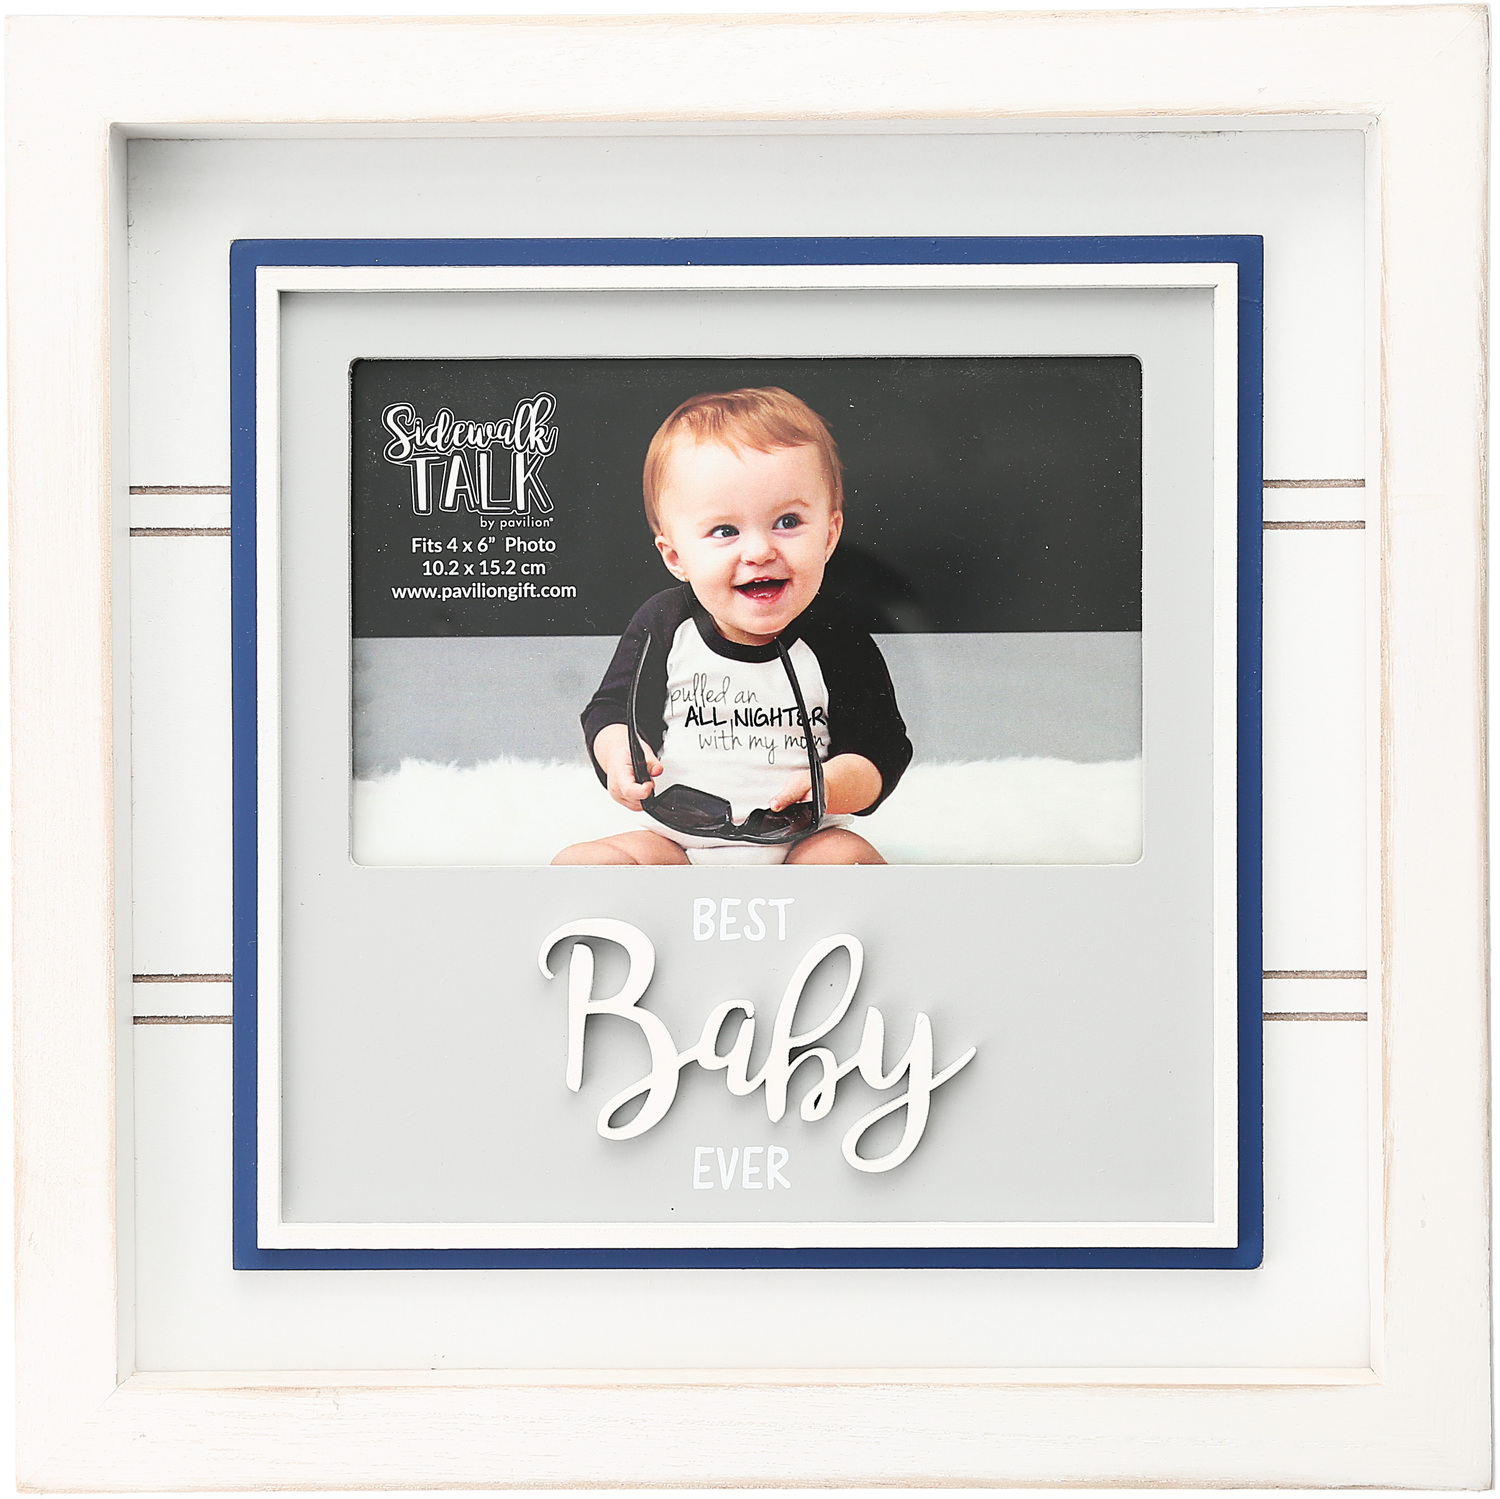 Best Baby by Sidewalk Talk - Best Baby - 10" Frame
(Holds 6" x 4" Photo)